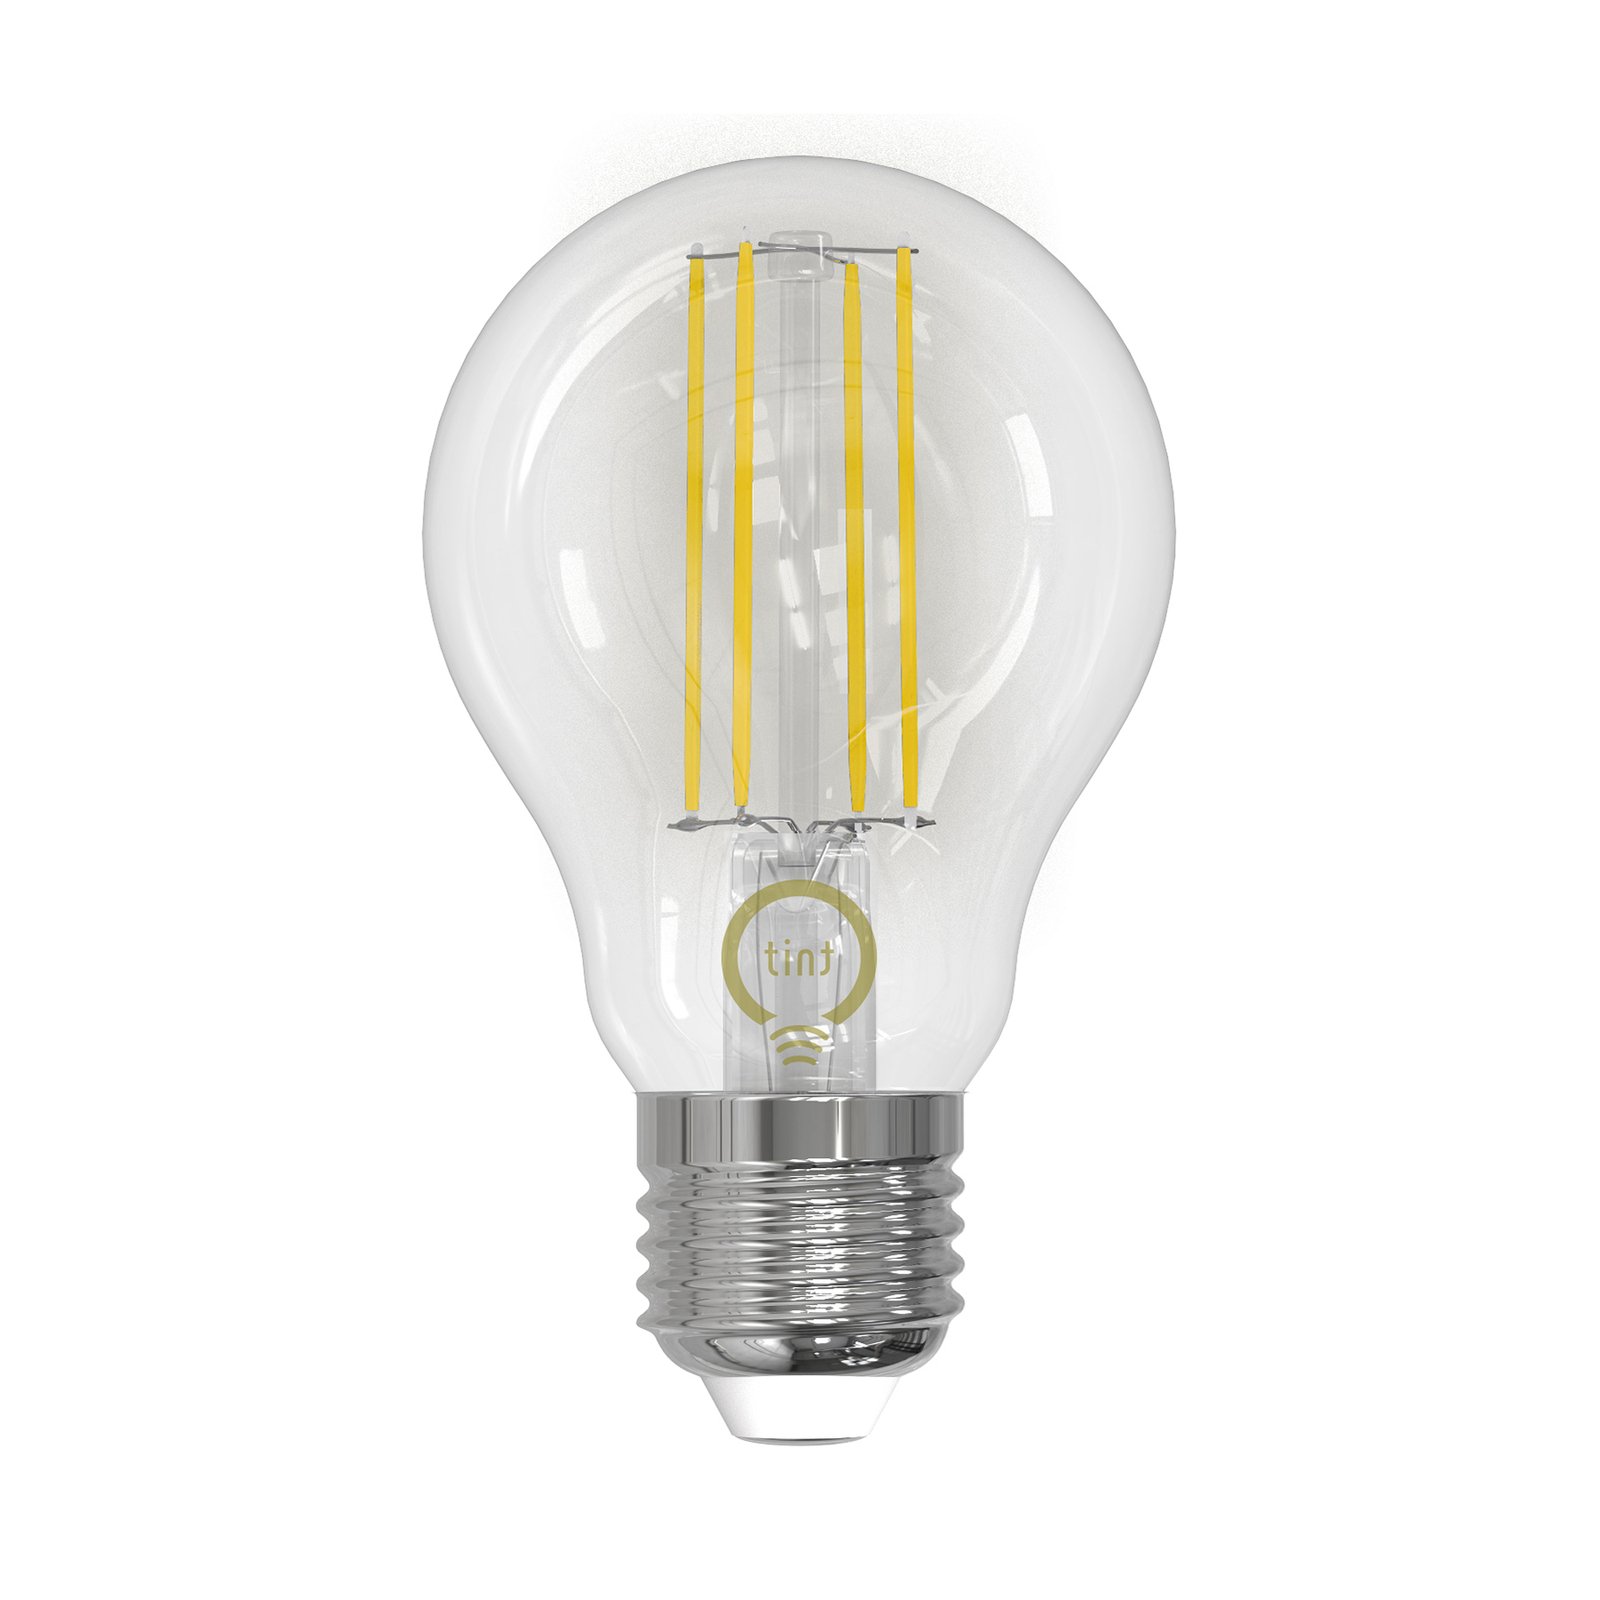 Müller Licht tint ampoule LED filament E27 7 W CCT